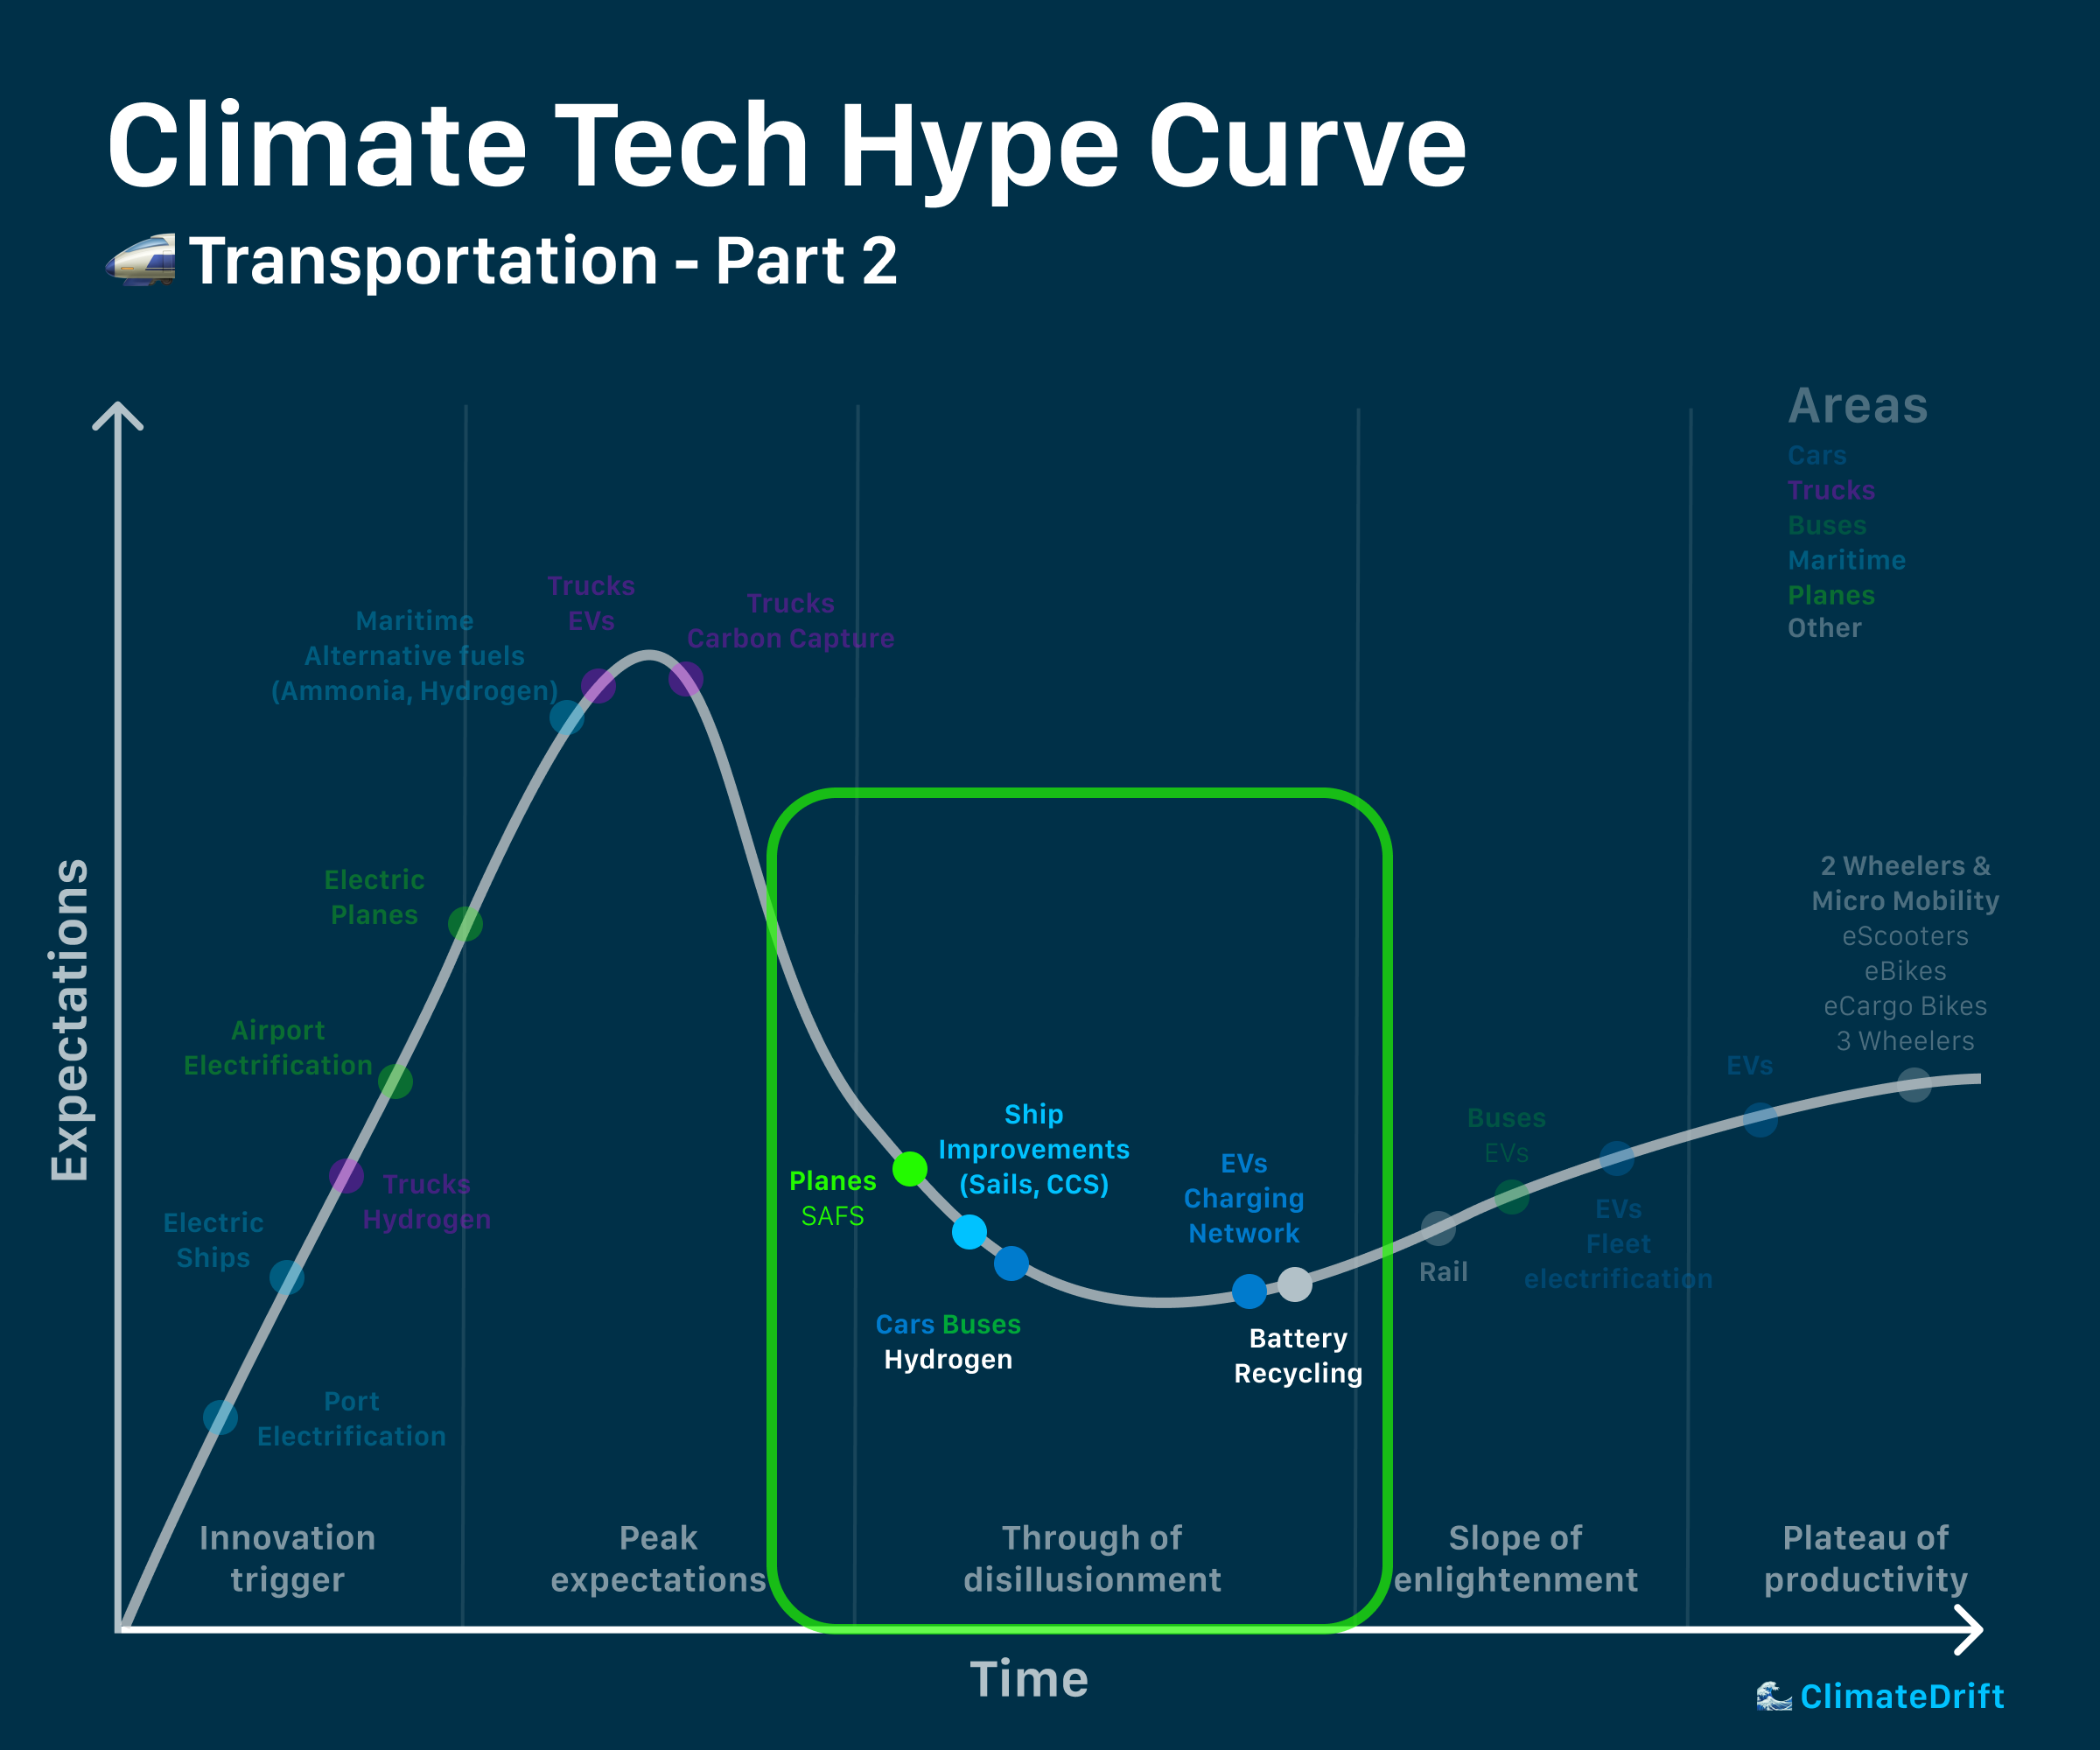 Climate Hype Curve: Transportation - Part 2